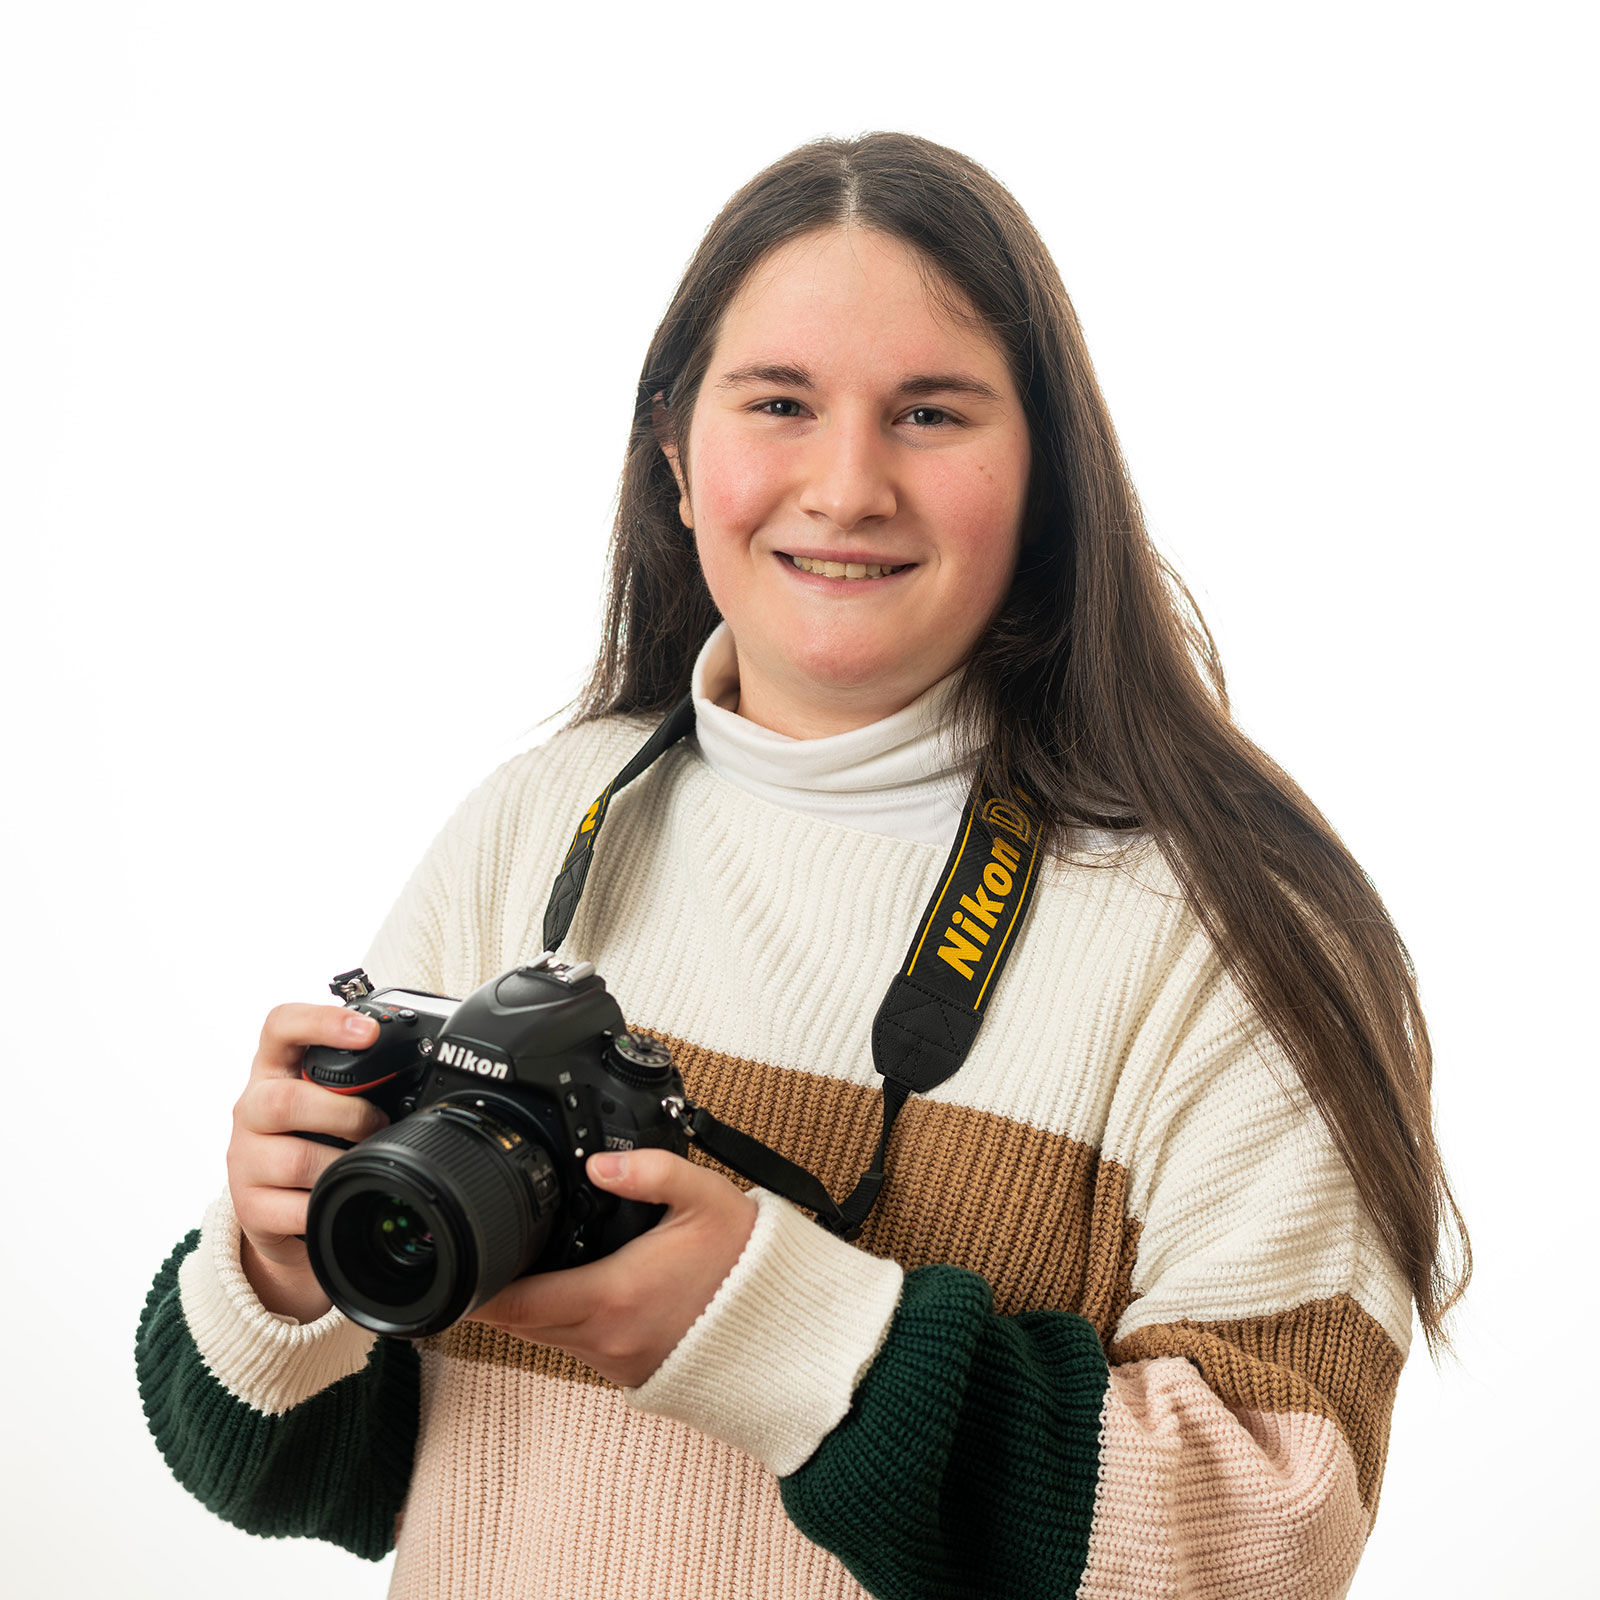 Jessica Skavicus holds a camera